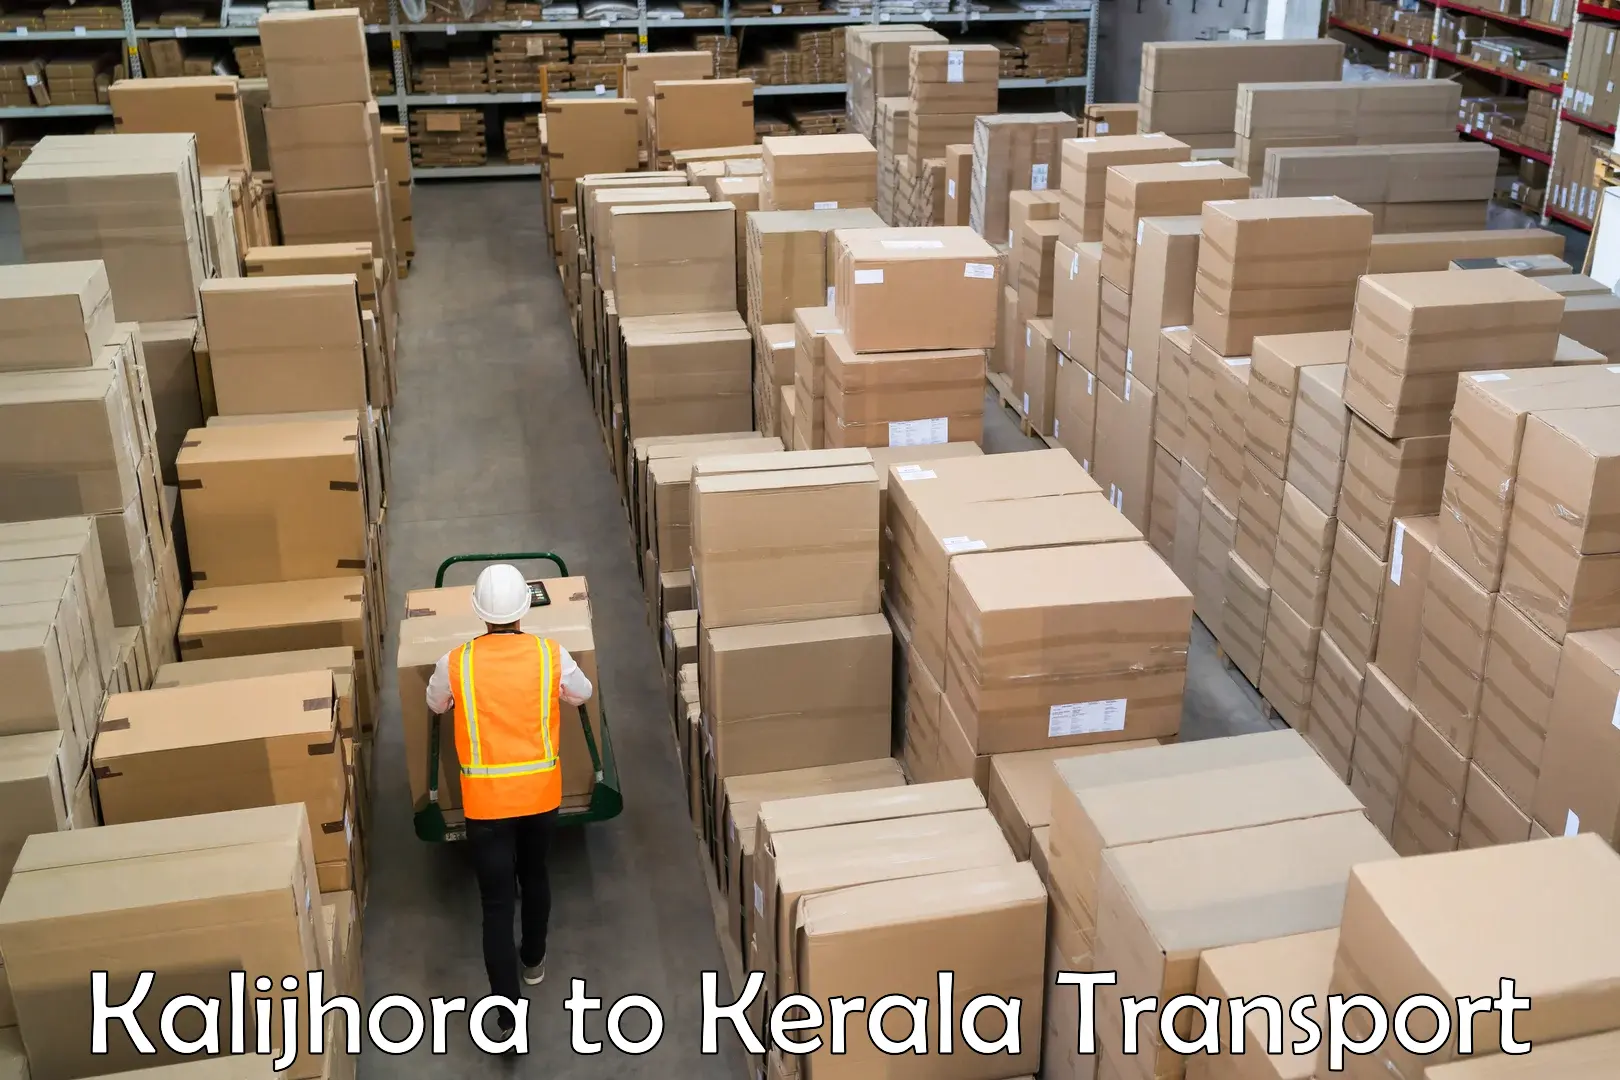 Furniture transport service Kalijhora to Kerala